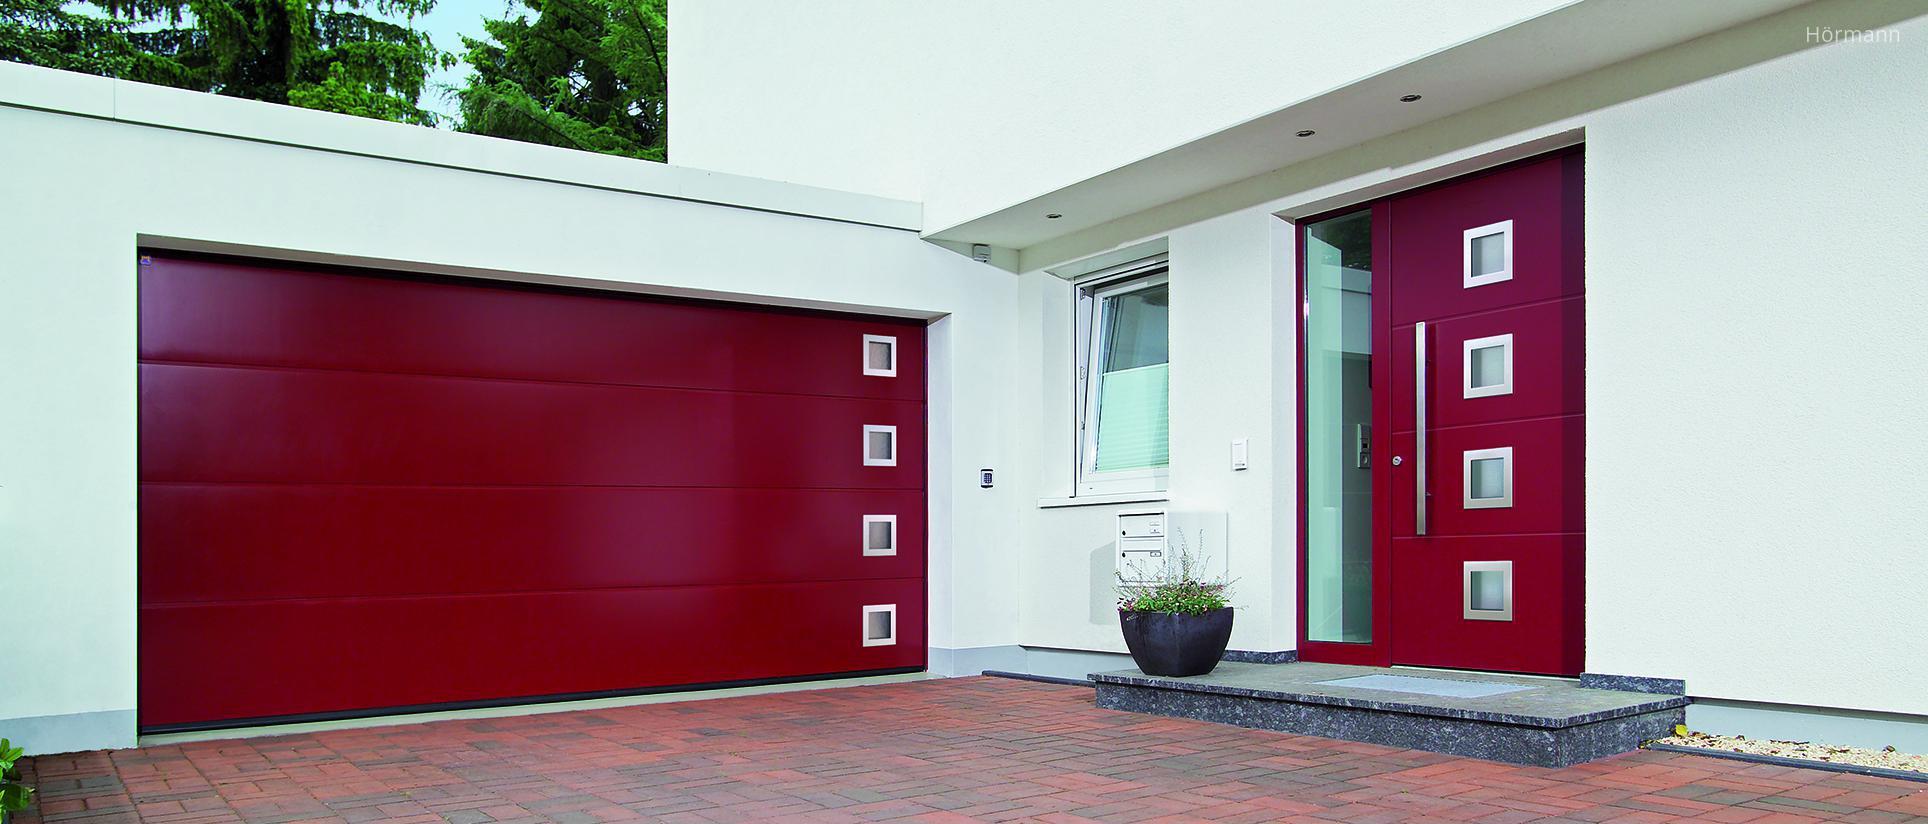 Piros szekcionált garázskapu és bejárati ajtó - garázs ötlet, modern stílusban